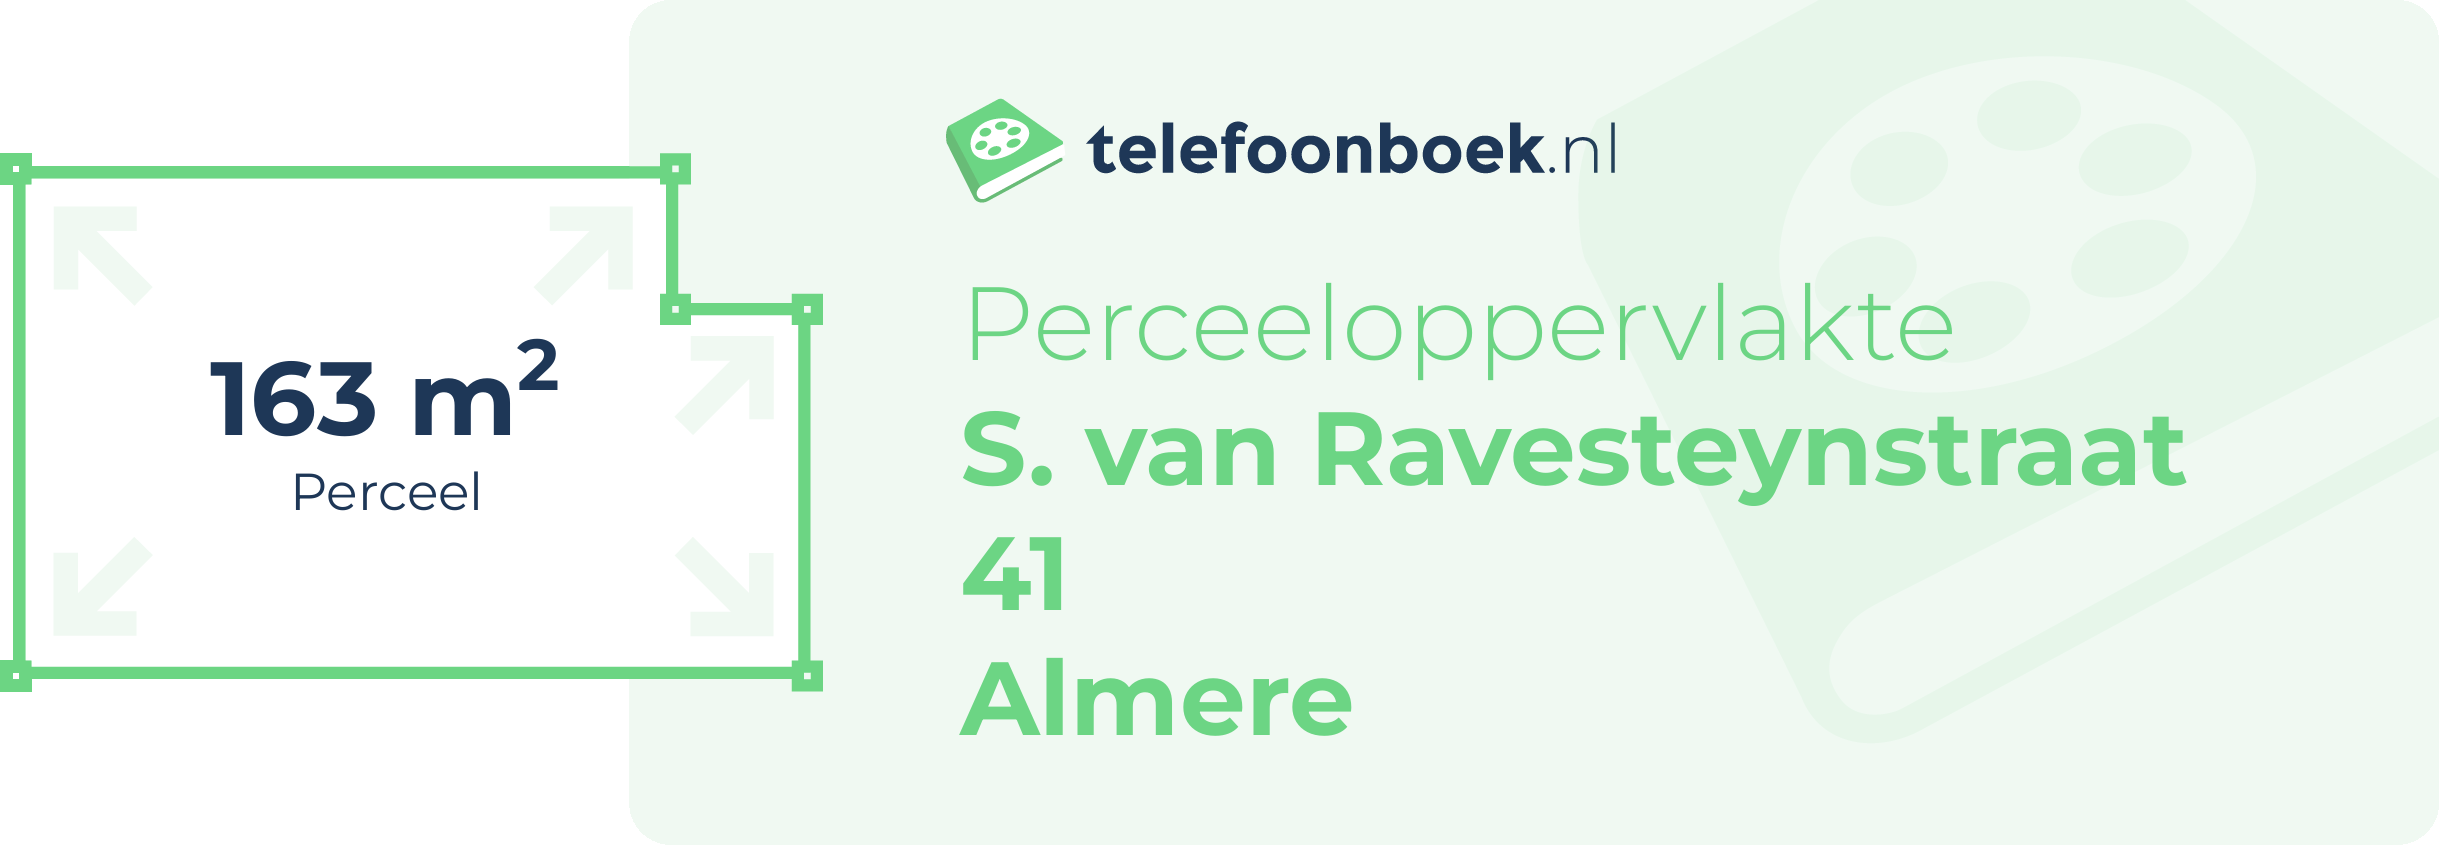 Perceeloppervlakte S. Van Ravesteynstraat 41 Almere